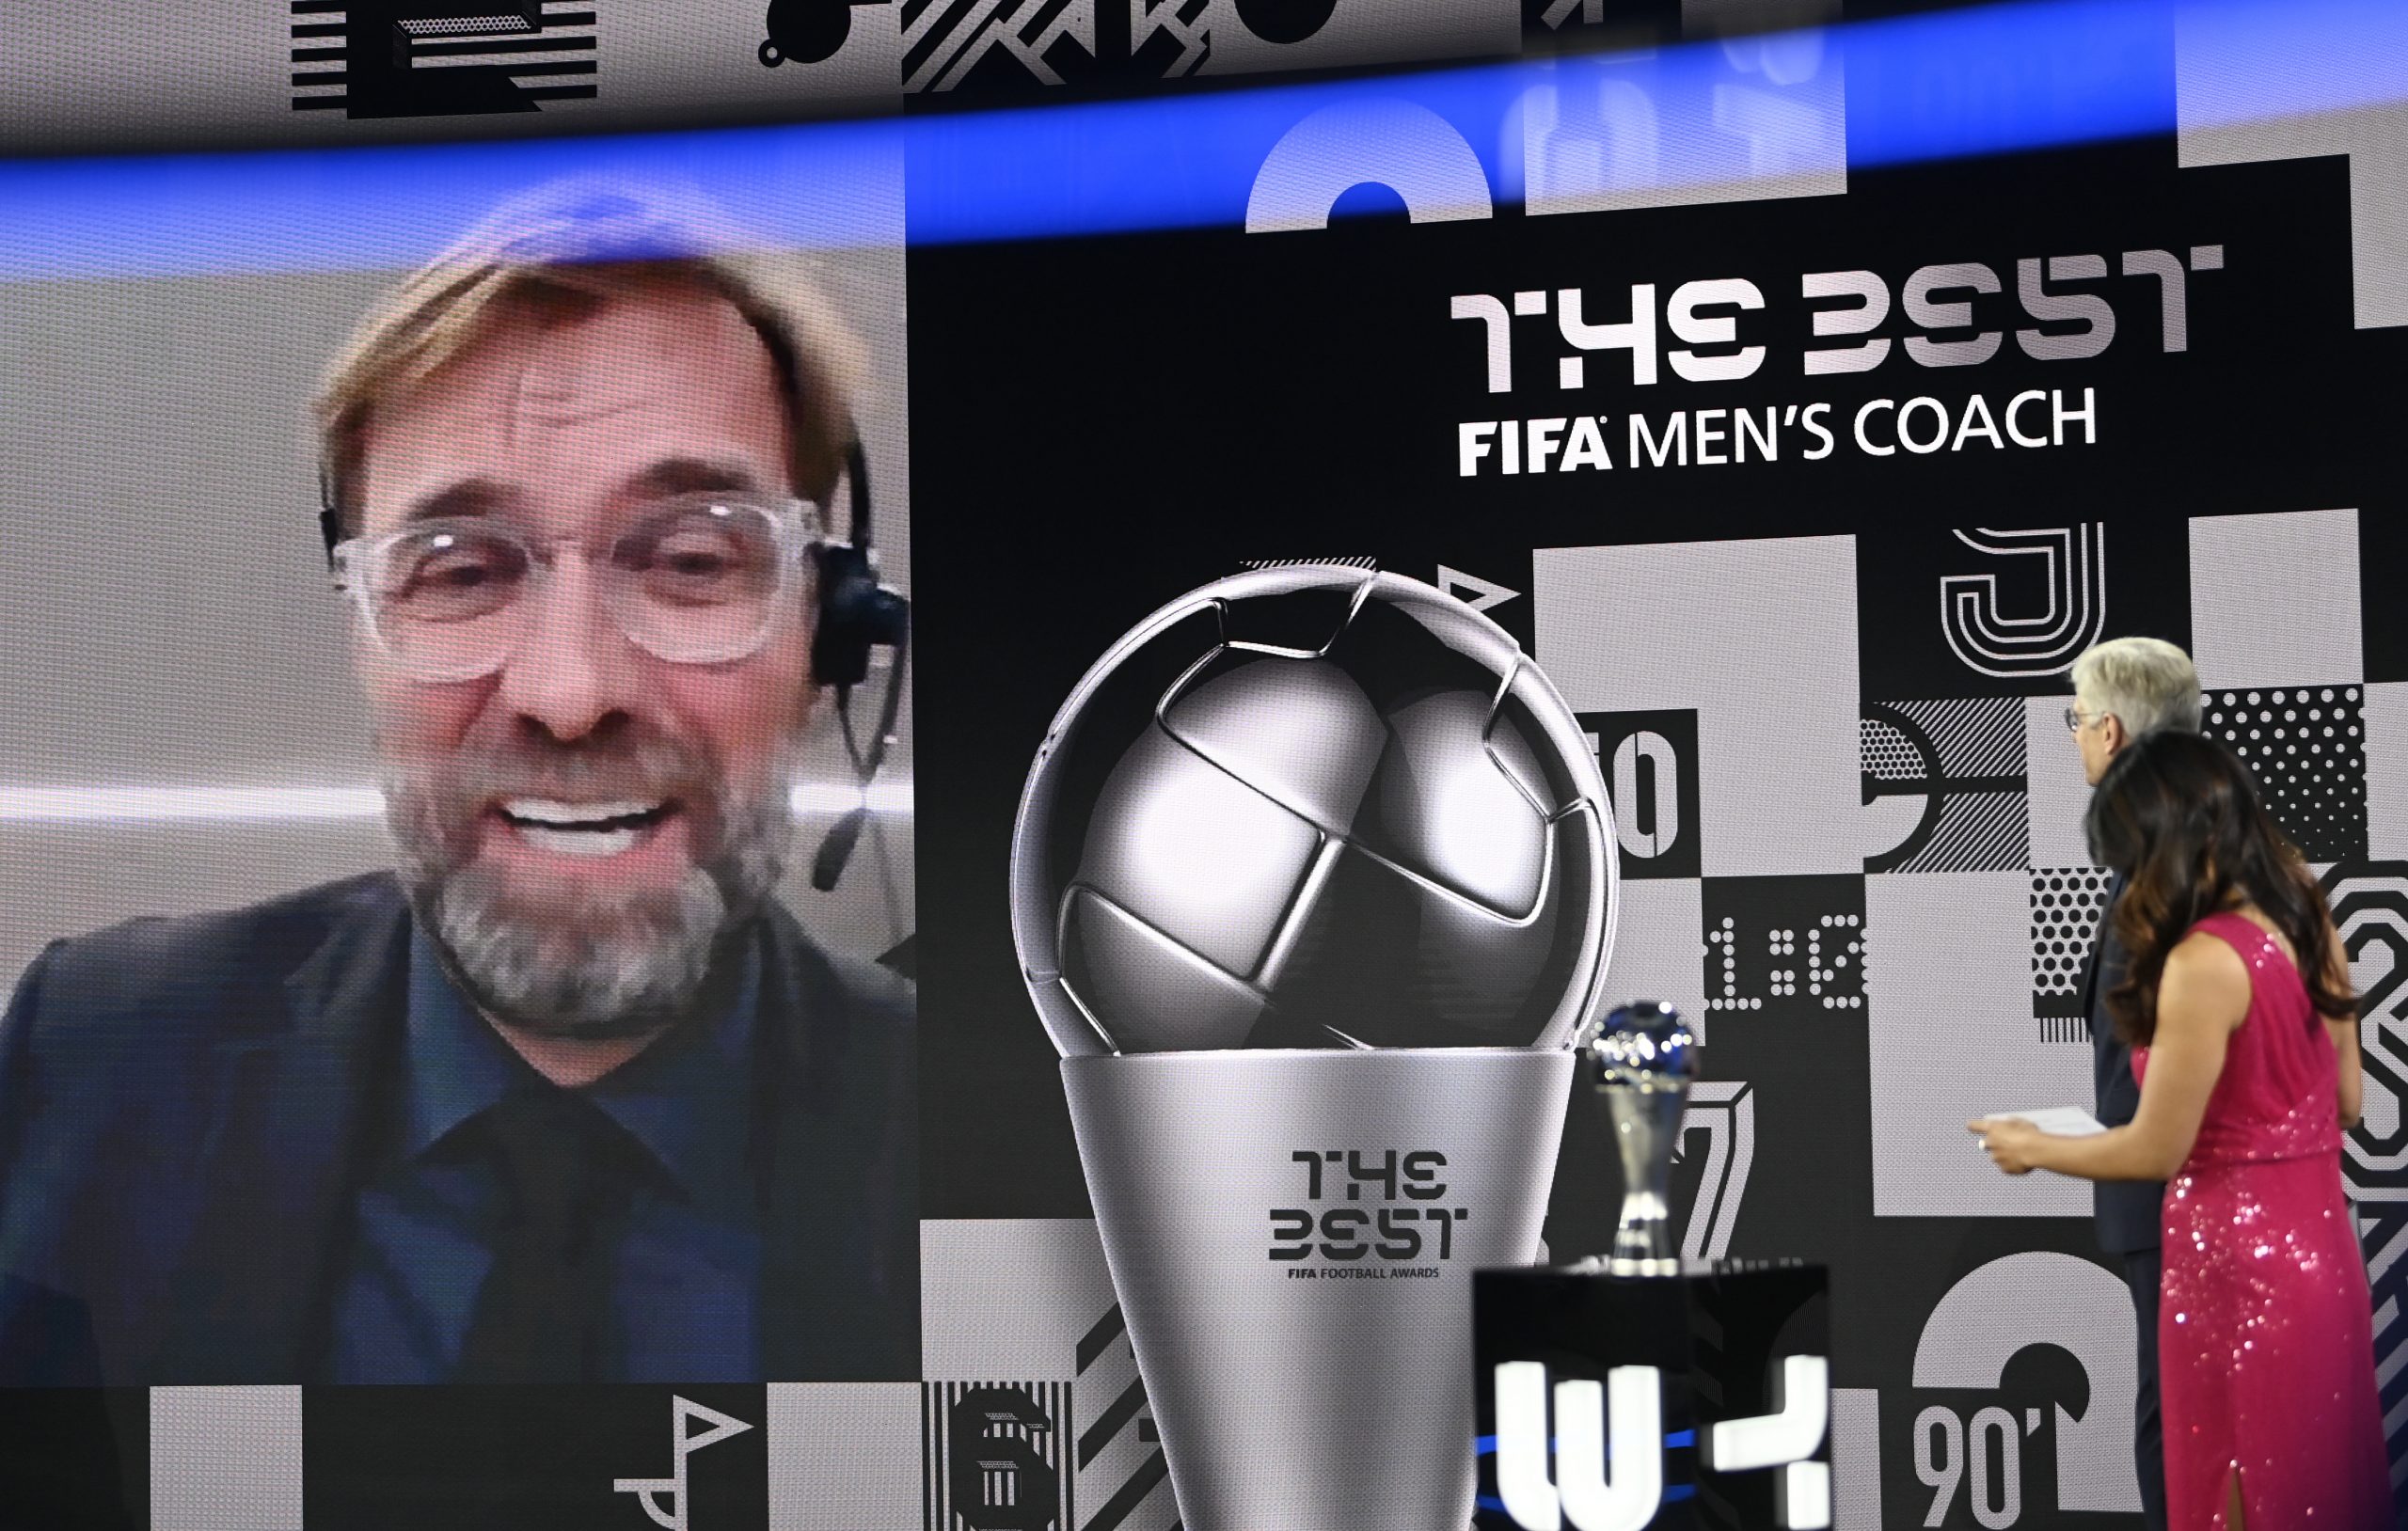 Klopu ponovo nagrada Fifa za najboljeg trenera: Šokiran sam 1